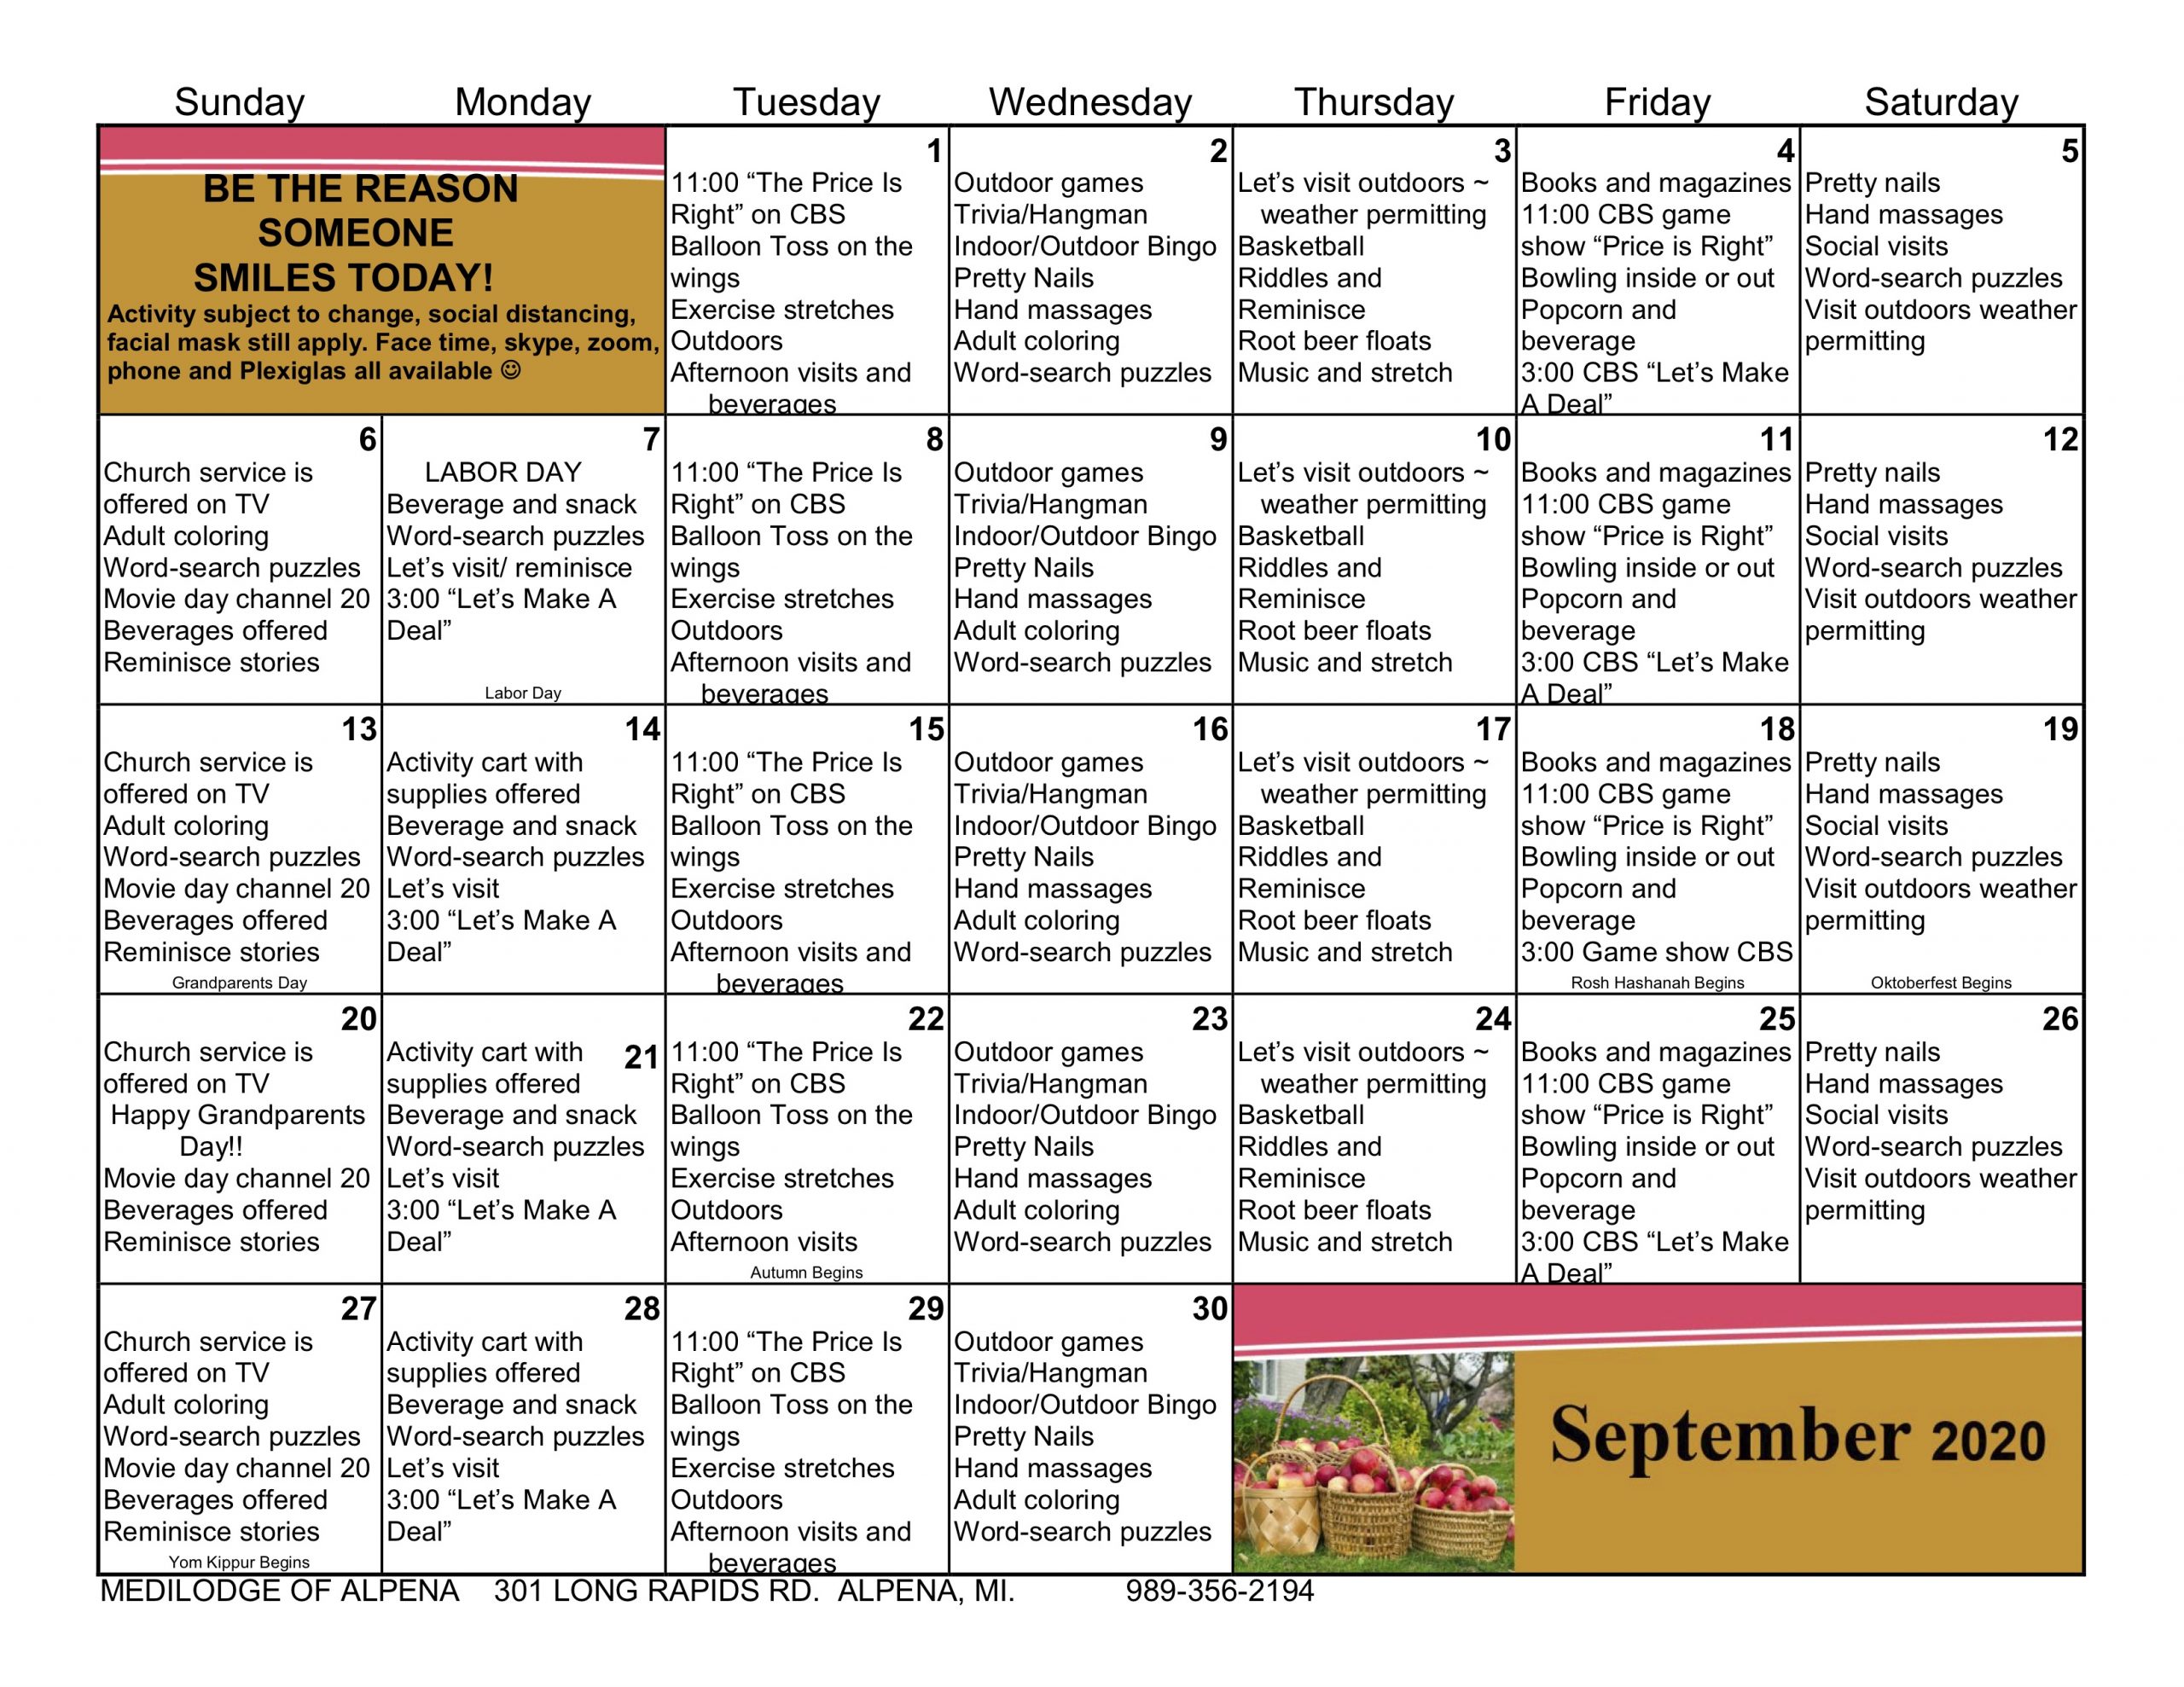 _Sept20_ADOBE_Calendars_Sept20-Seasonal-C-Letter